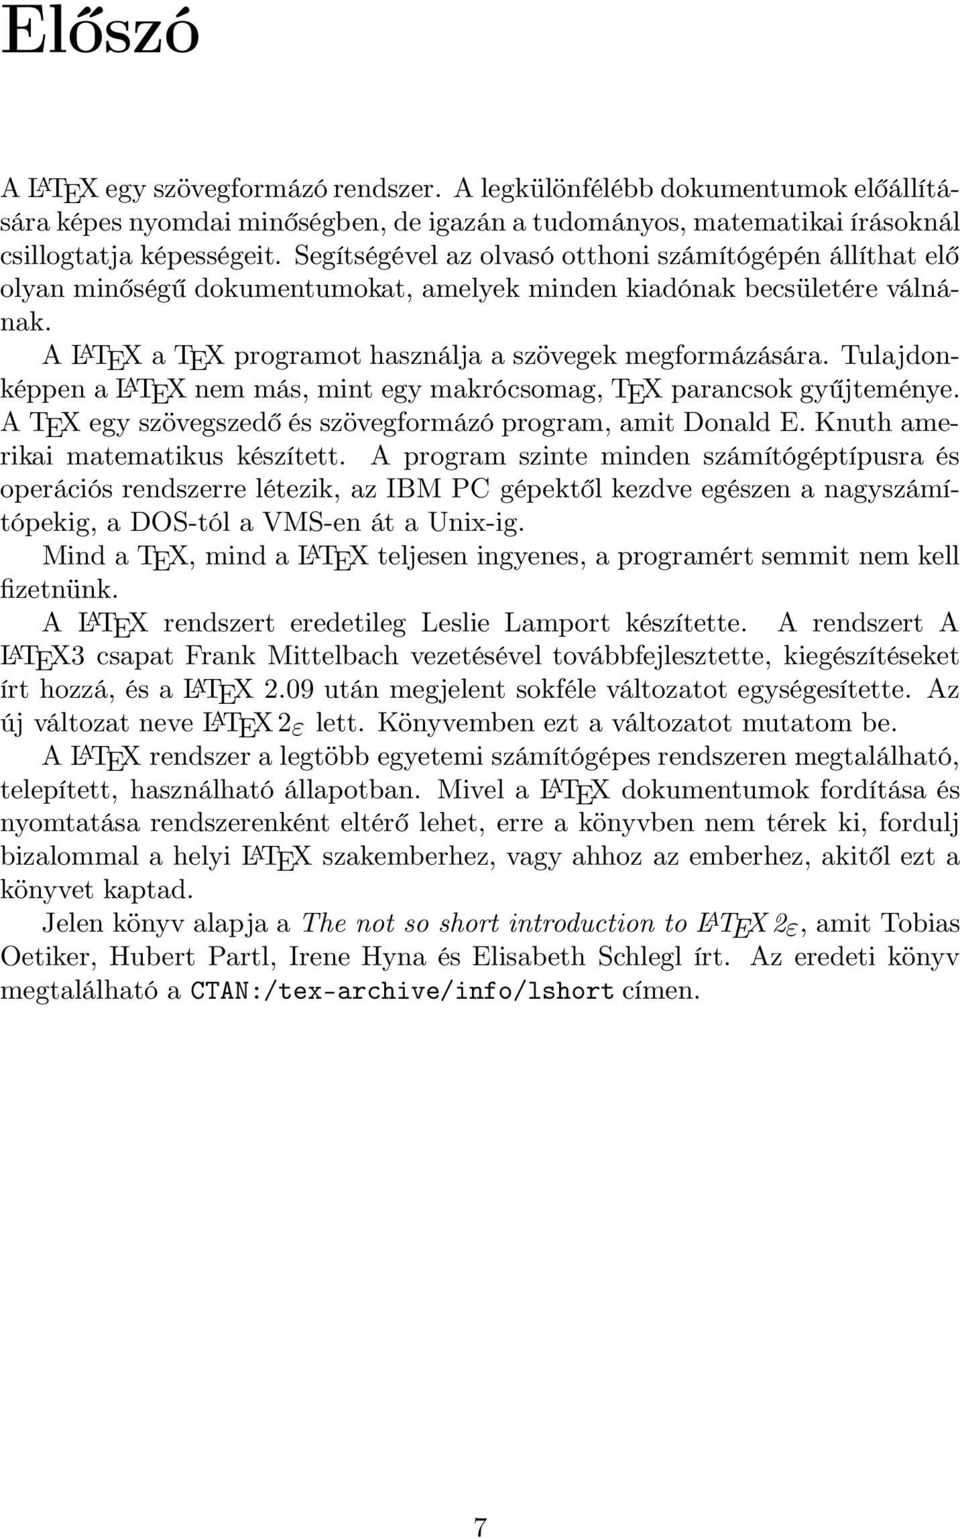 Tulajdonképpen a L A TEX nem más, mint egy makrócsomag, TEX parancsok gyűjteménye. A TEX egy szövegszedő és szövegformázó program, amit Donald E. Knuth amerikai matematikus készített.